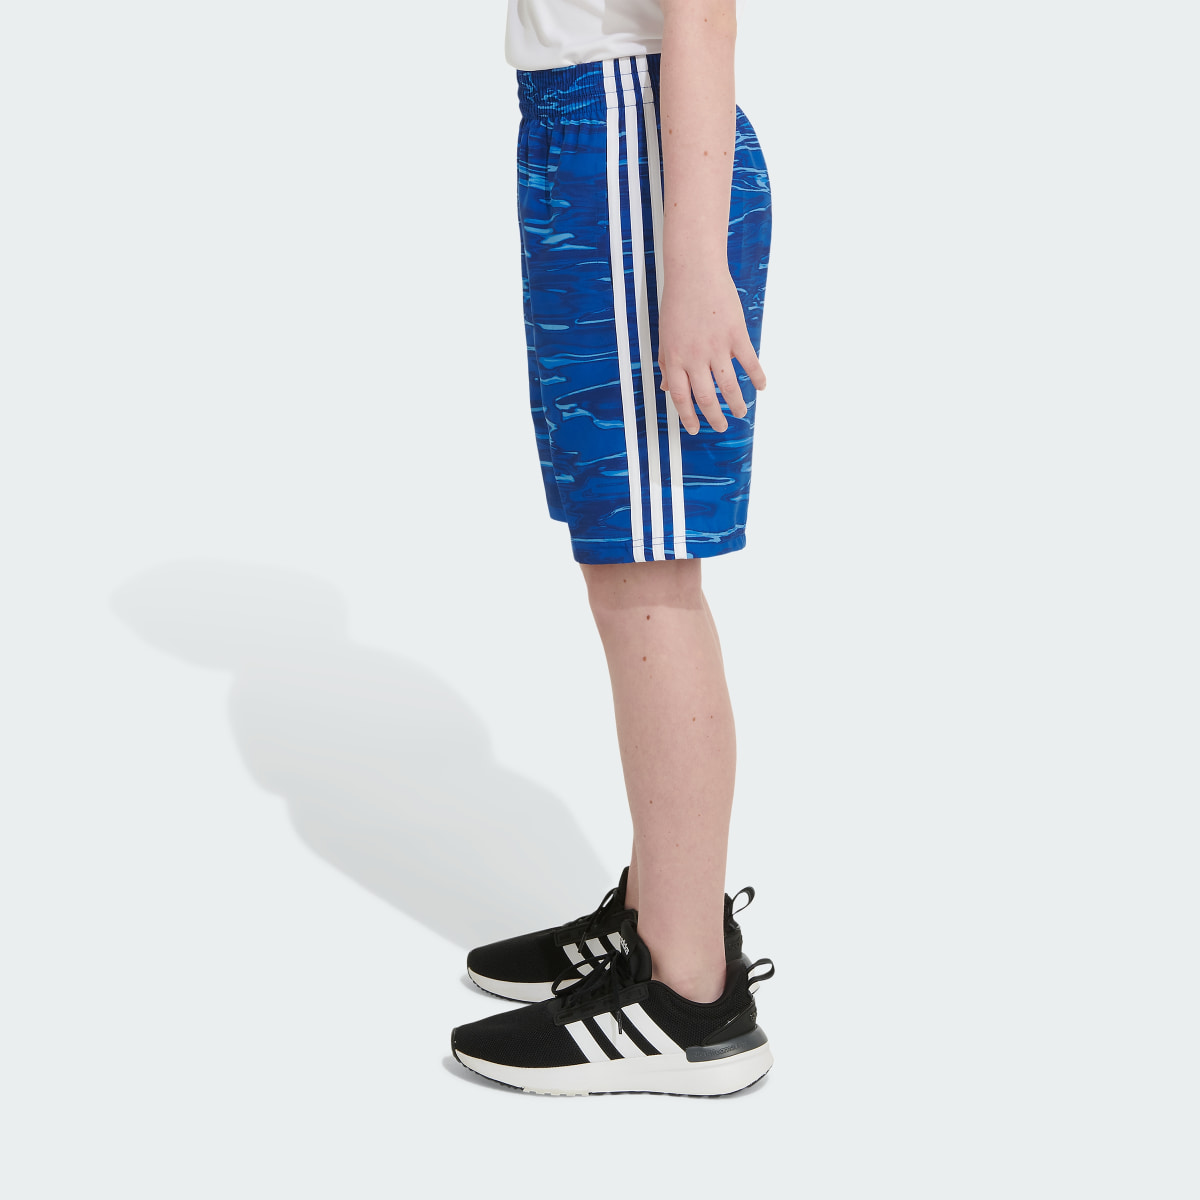 Adidas Allover Print Liquid Camo Woven Shorts. 5